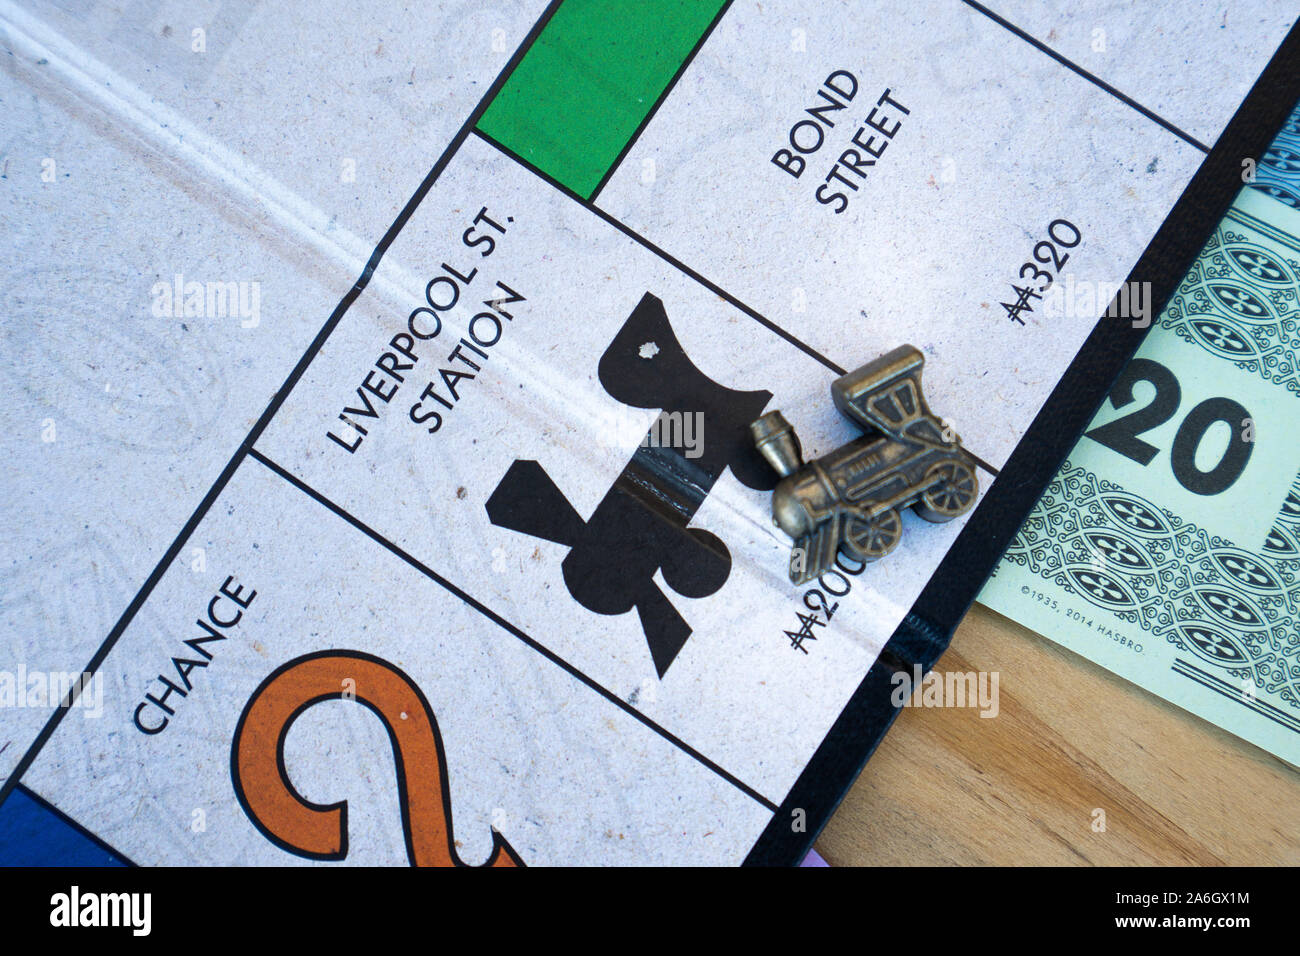 Ein Spieler mit dem Zug Stück landet auf der Liverpool Street Station im Brettspiel Monopoly Stockfoto